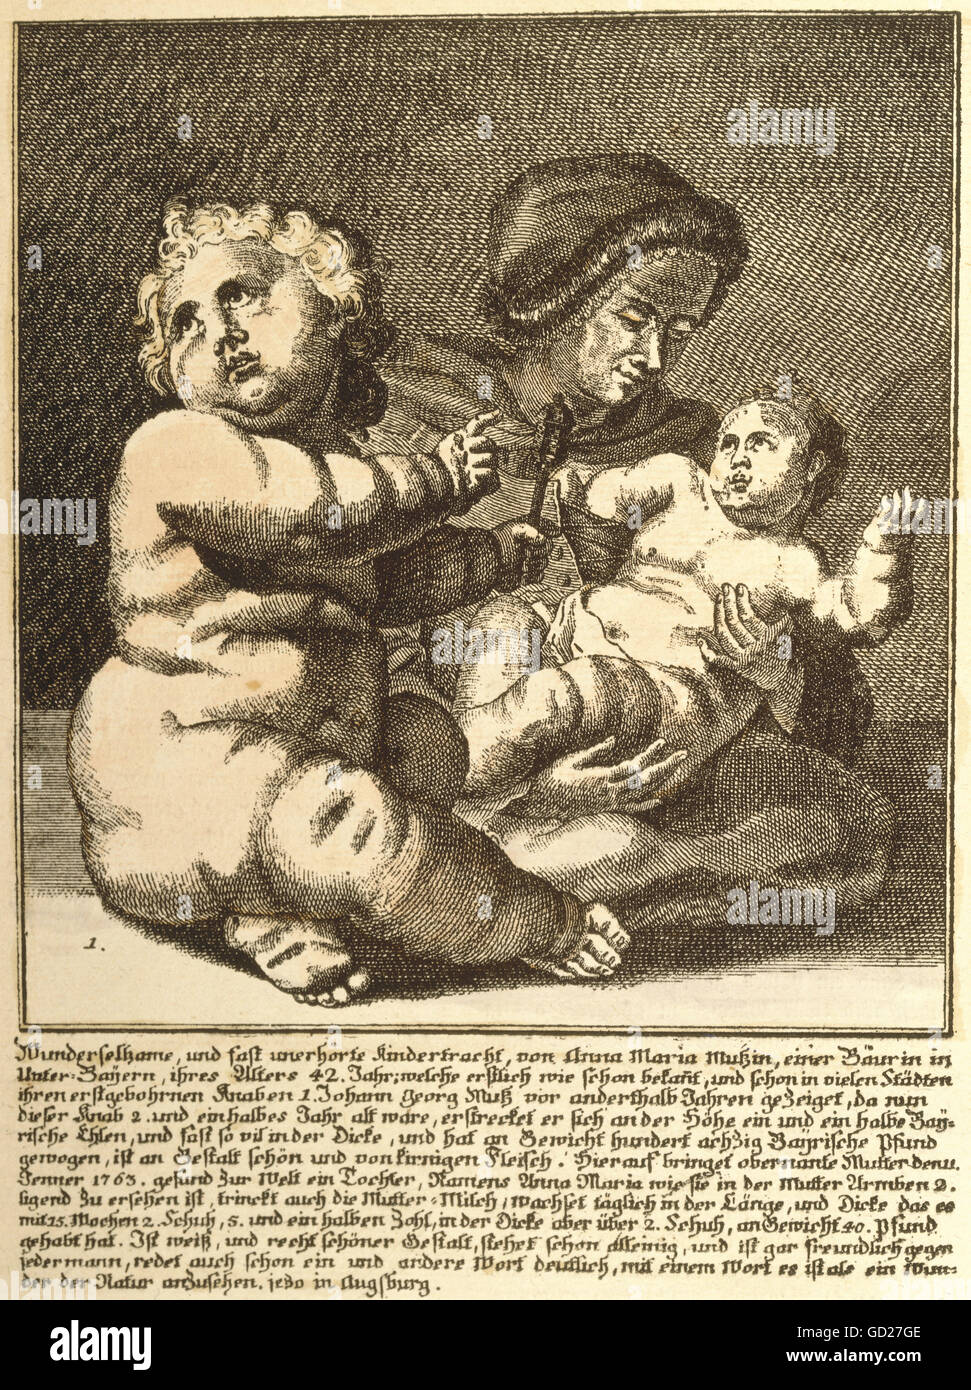 Medicina, anomalie, due giganti di infanti di Lower-Bavarian countrywoman, mostrato nel pubblico di Augusta e altre città, 1763, artista del diritto d'autore non deve essere cancellata Foto Stock